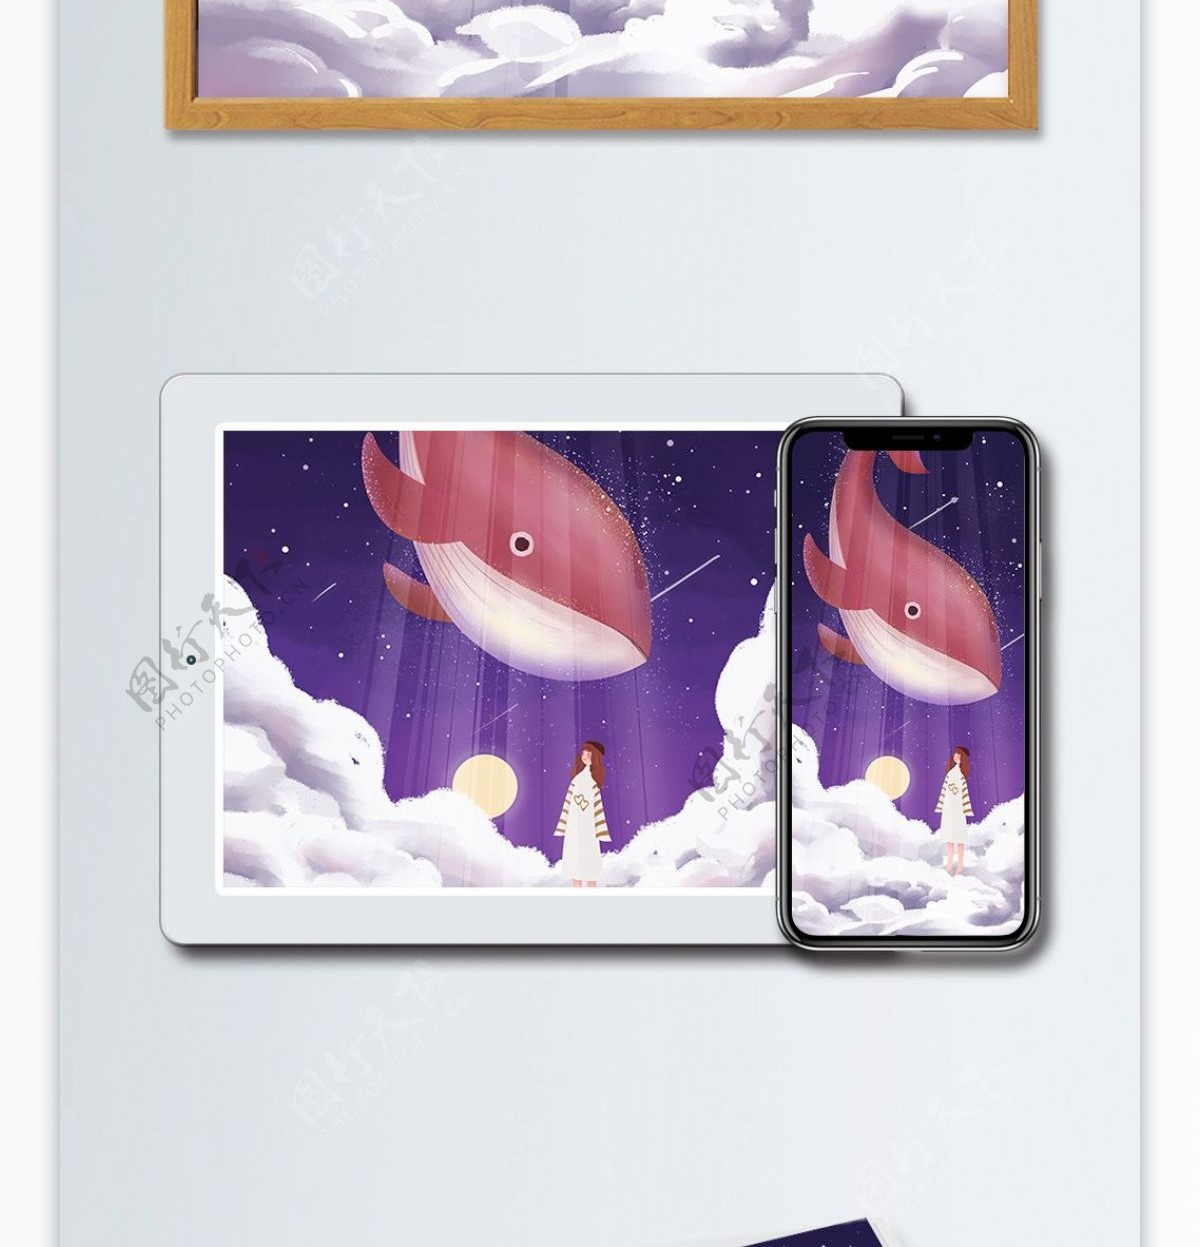 梦幻星空下的鲸鱼和女孩原创插画